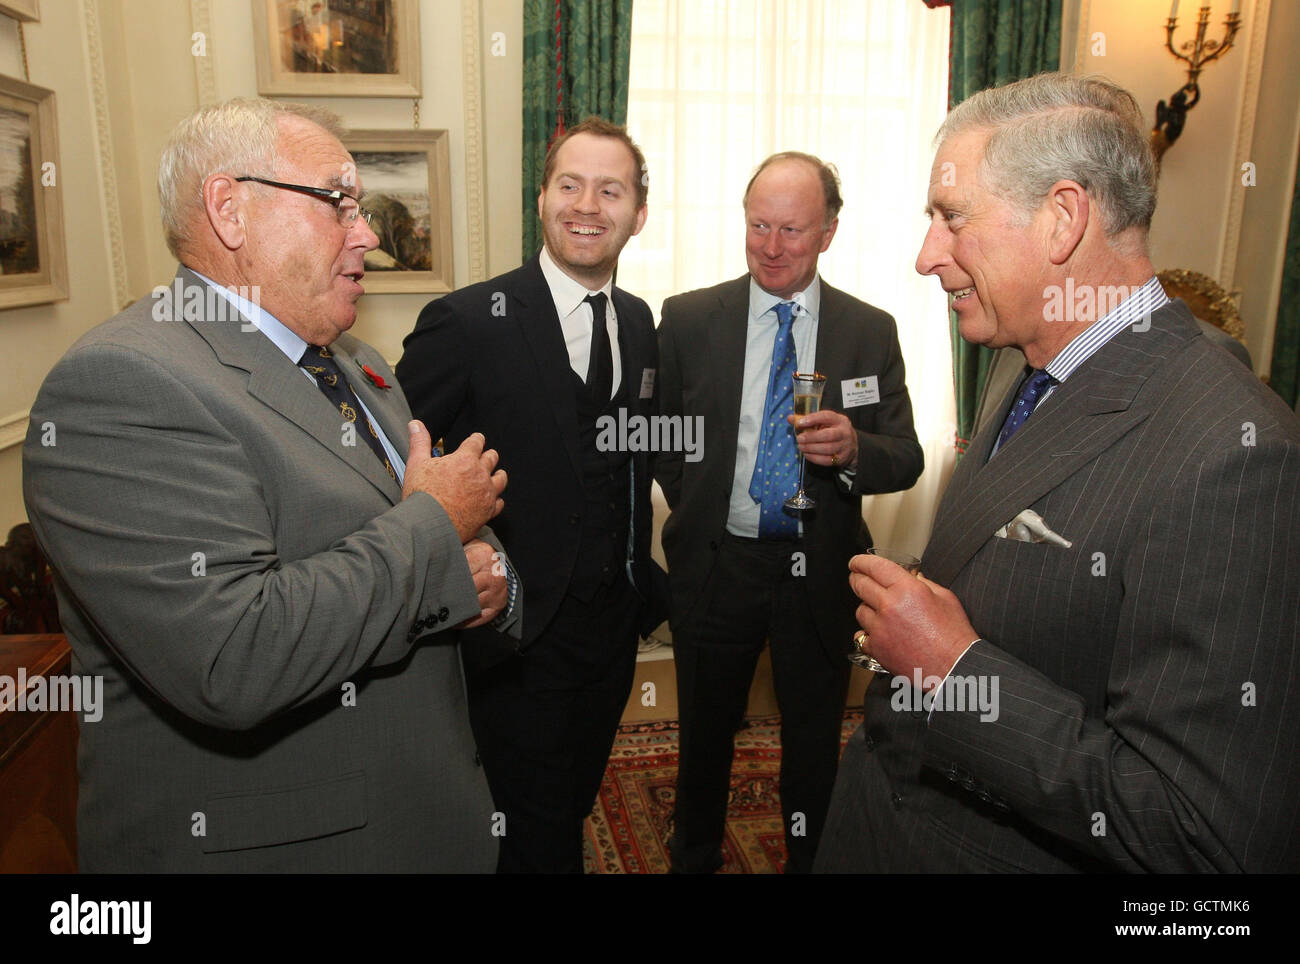 Le Prince de Galles s'entretient avec le président du groupe de commercialisation des produits des montagnes Cambriennes Gareth Rowlands, le chef Bryn Williams et le directeur de l'Association des fournisseurs indépendants de viandes Norman Bagley, à Clarence House, dans le centre de Londres. Banque D'Images